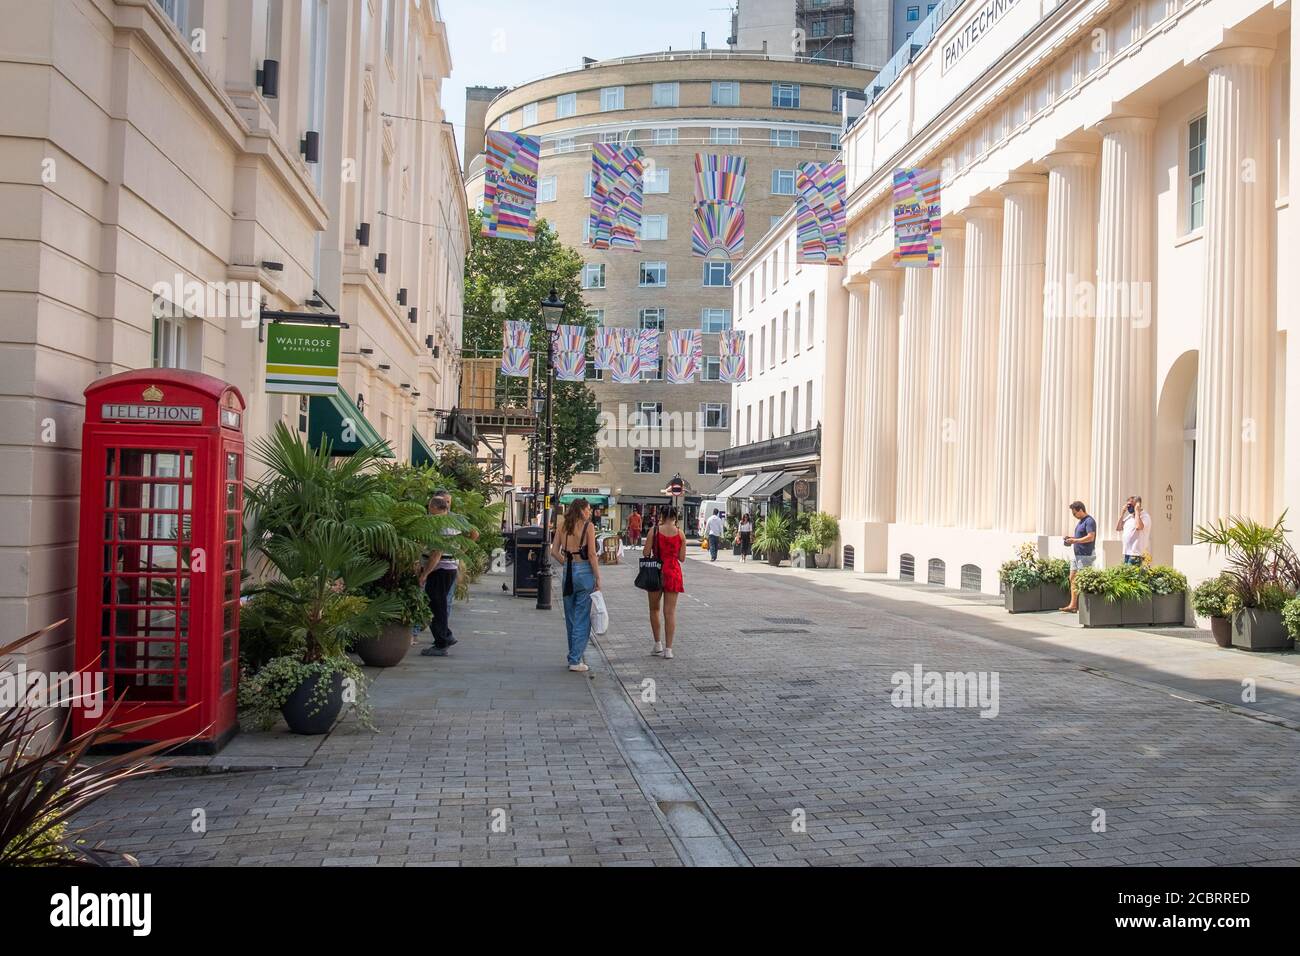 London - August 2020: Motcomb Street in Knightsbridge / Belgravia. Eine gehobene Einkaufsstraße, die für ihre luxuriösen Modegeschäfte bekannt ist Stockfoto